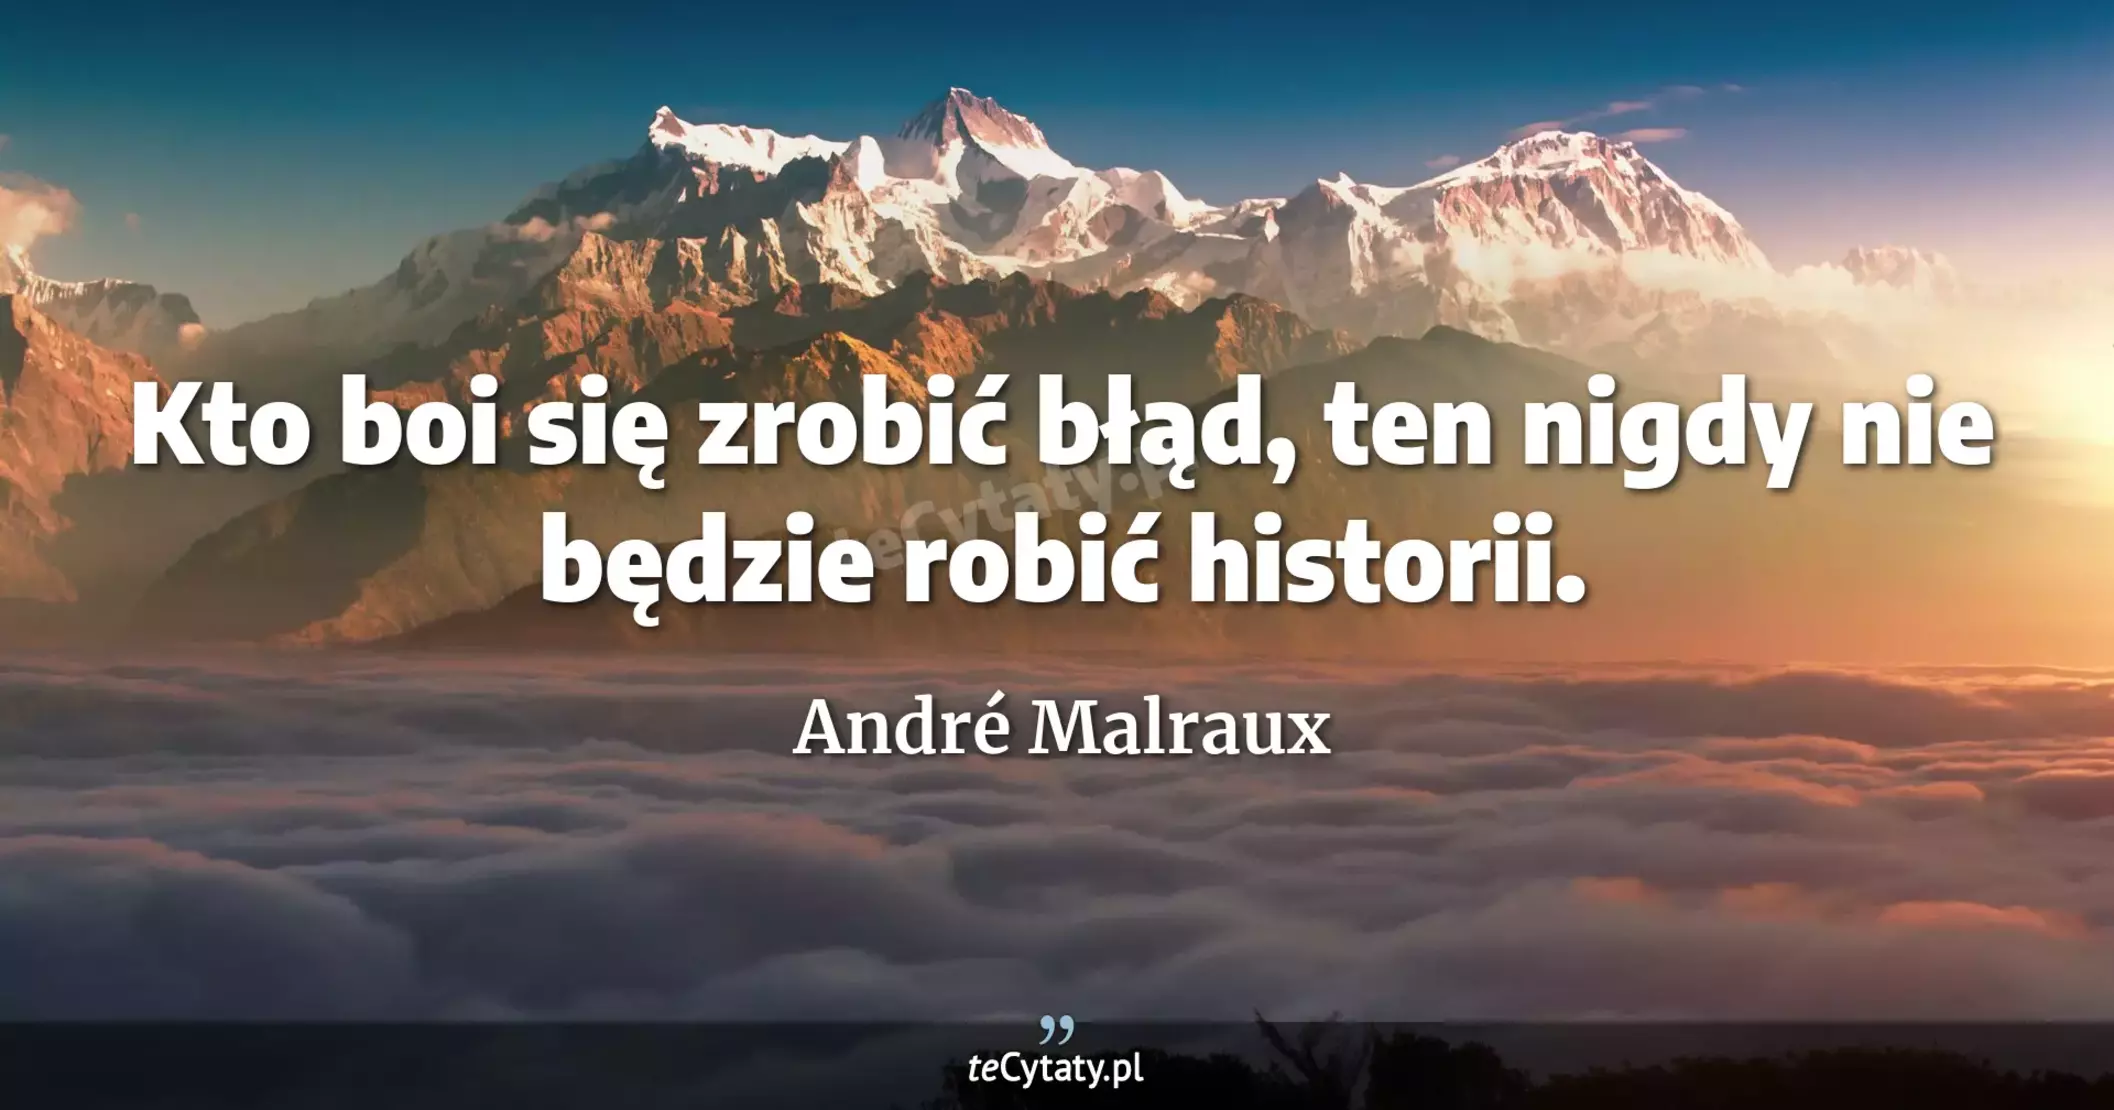 Kto boi się zrobić błąd, ten nigdy nie będzie robić historii. - André Malraux